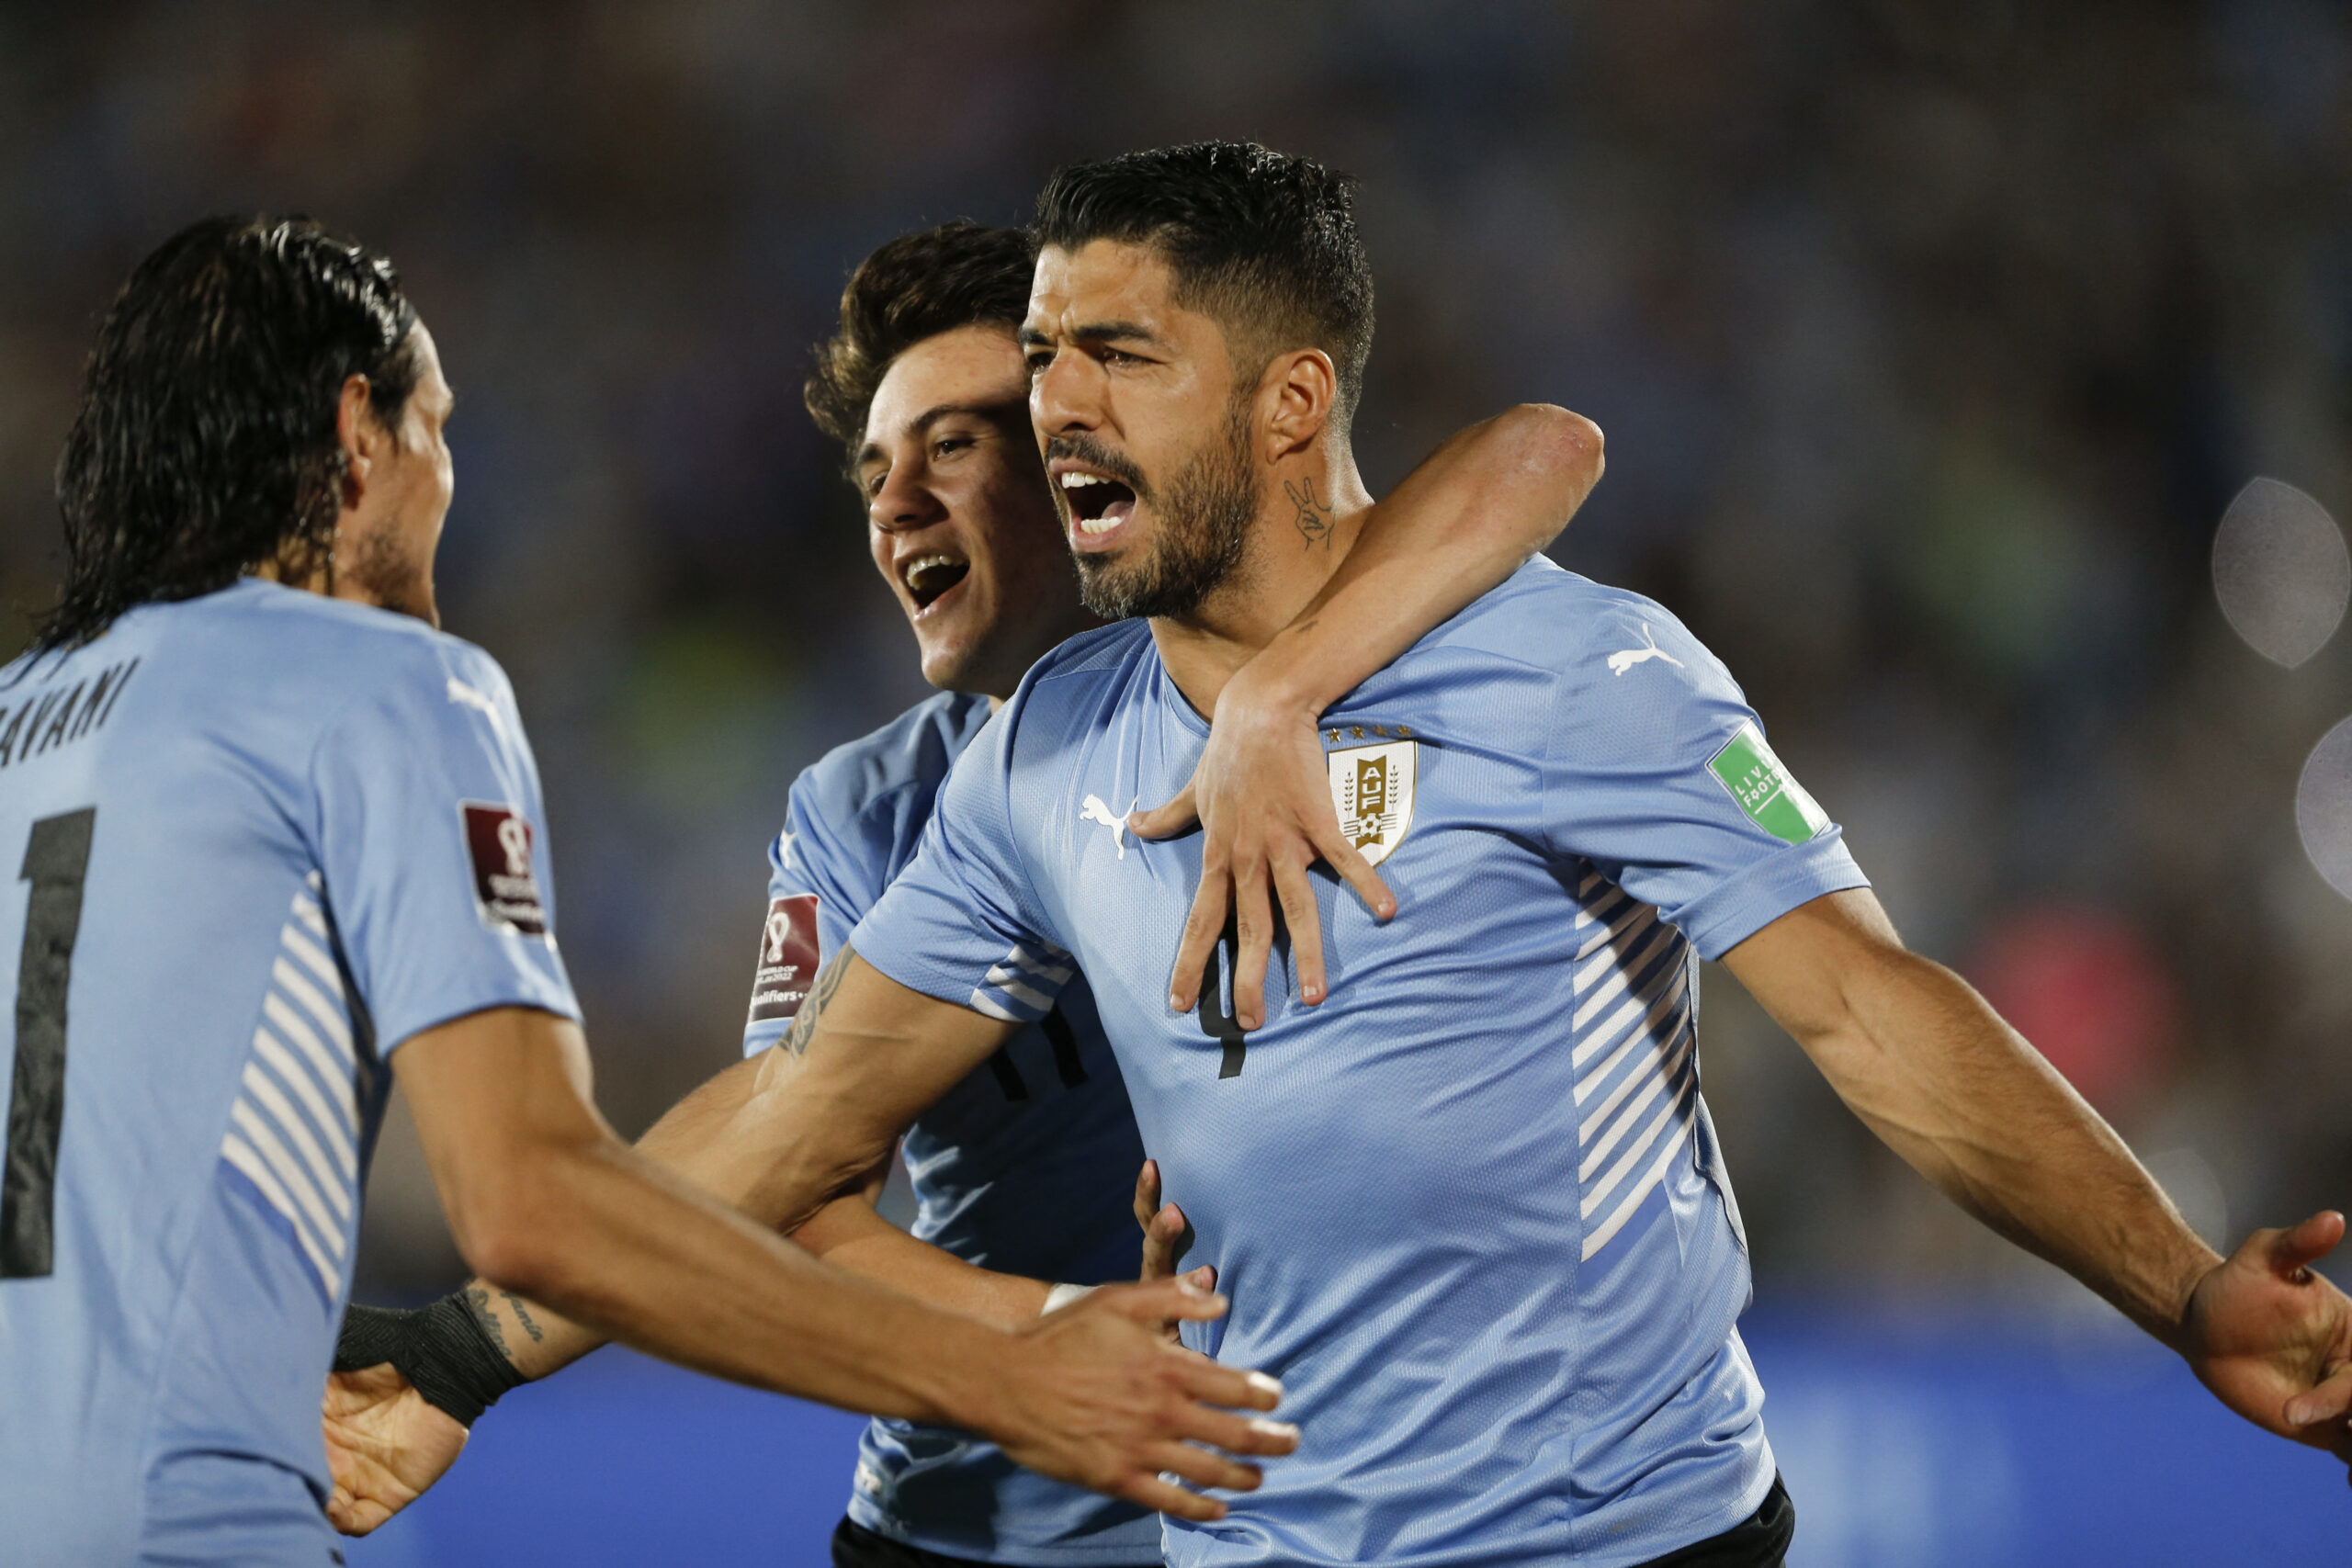 Los botines del gol - EL PAÍS Uruguay